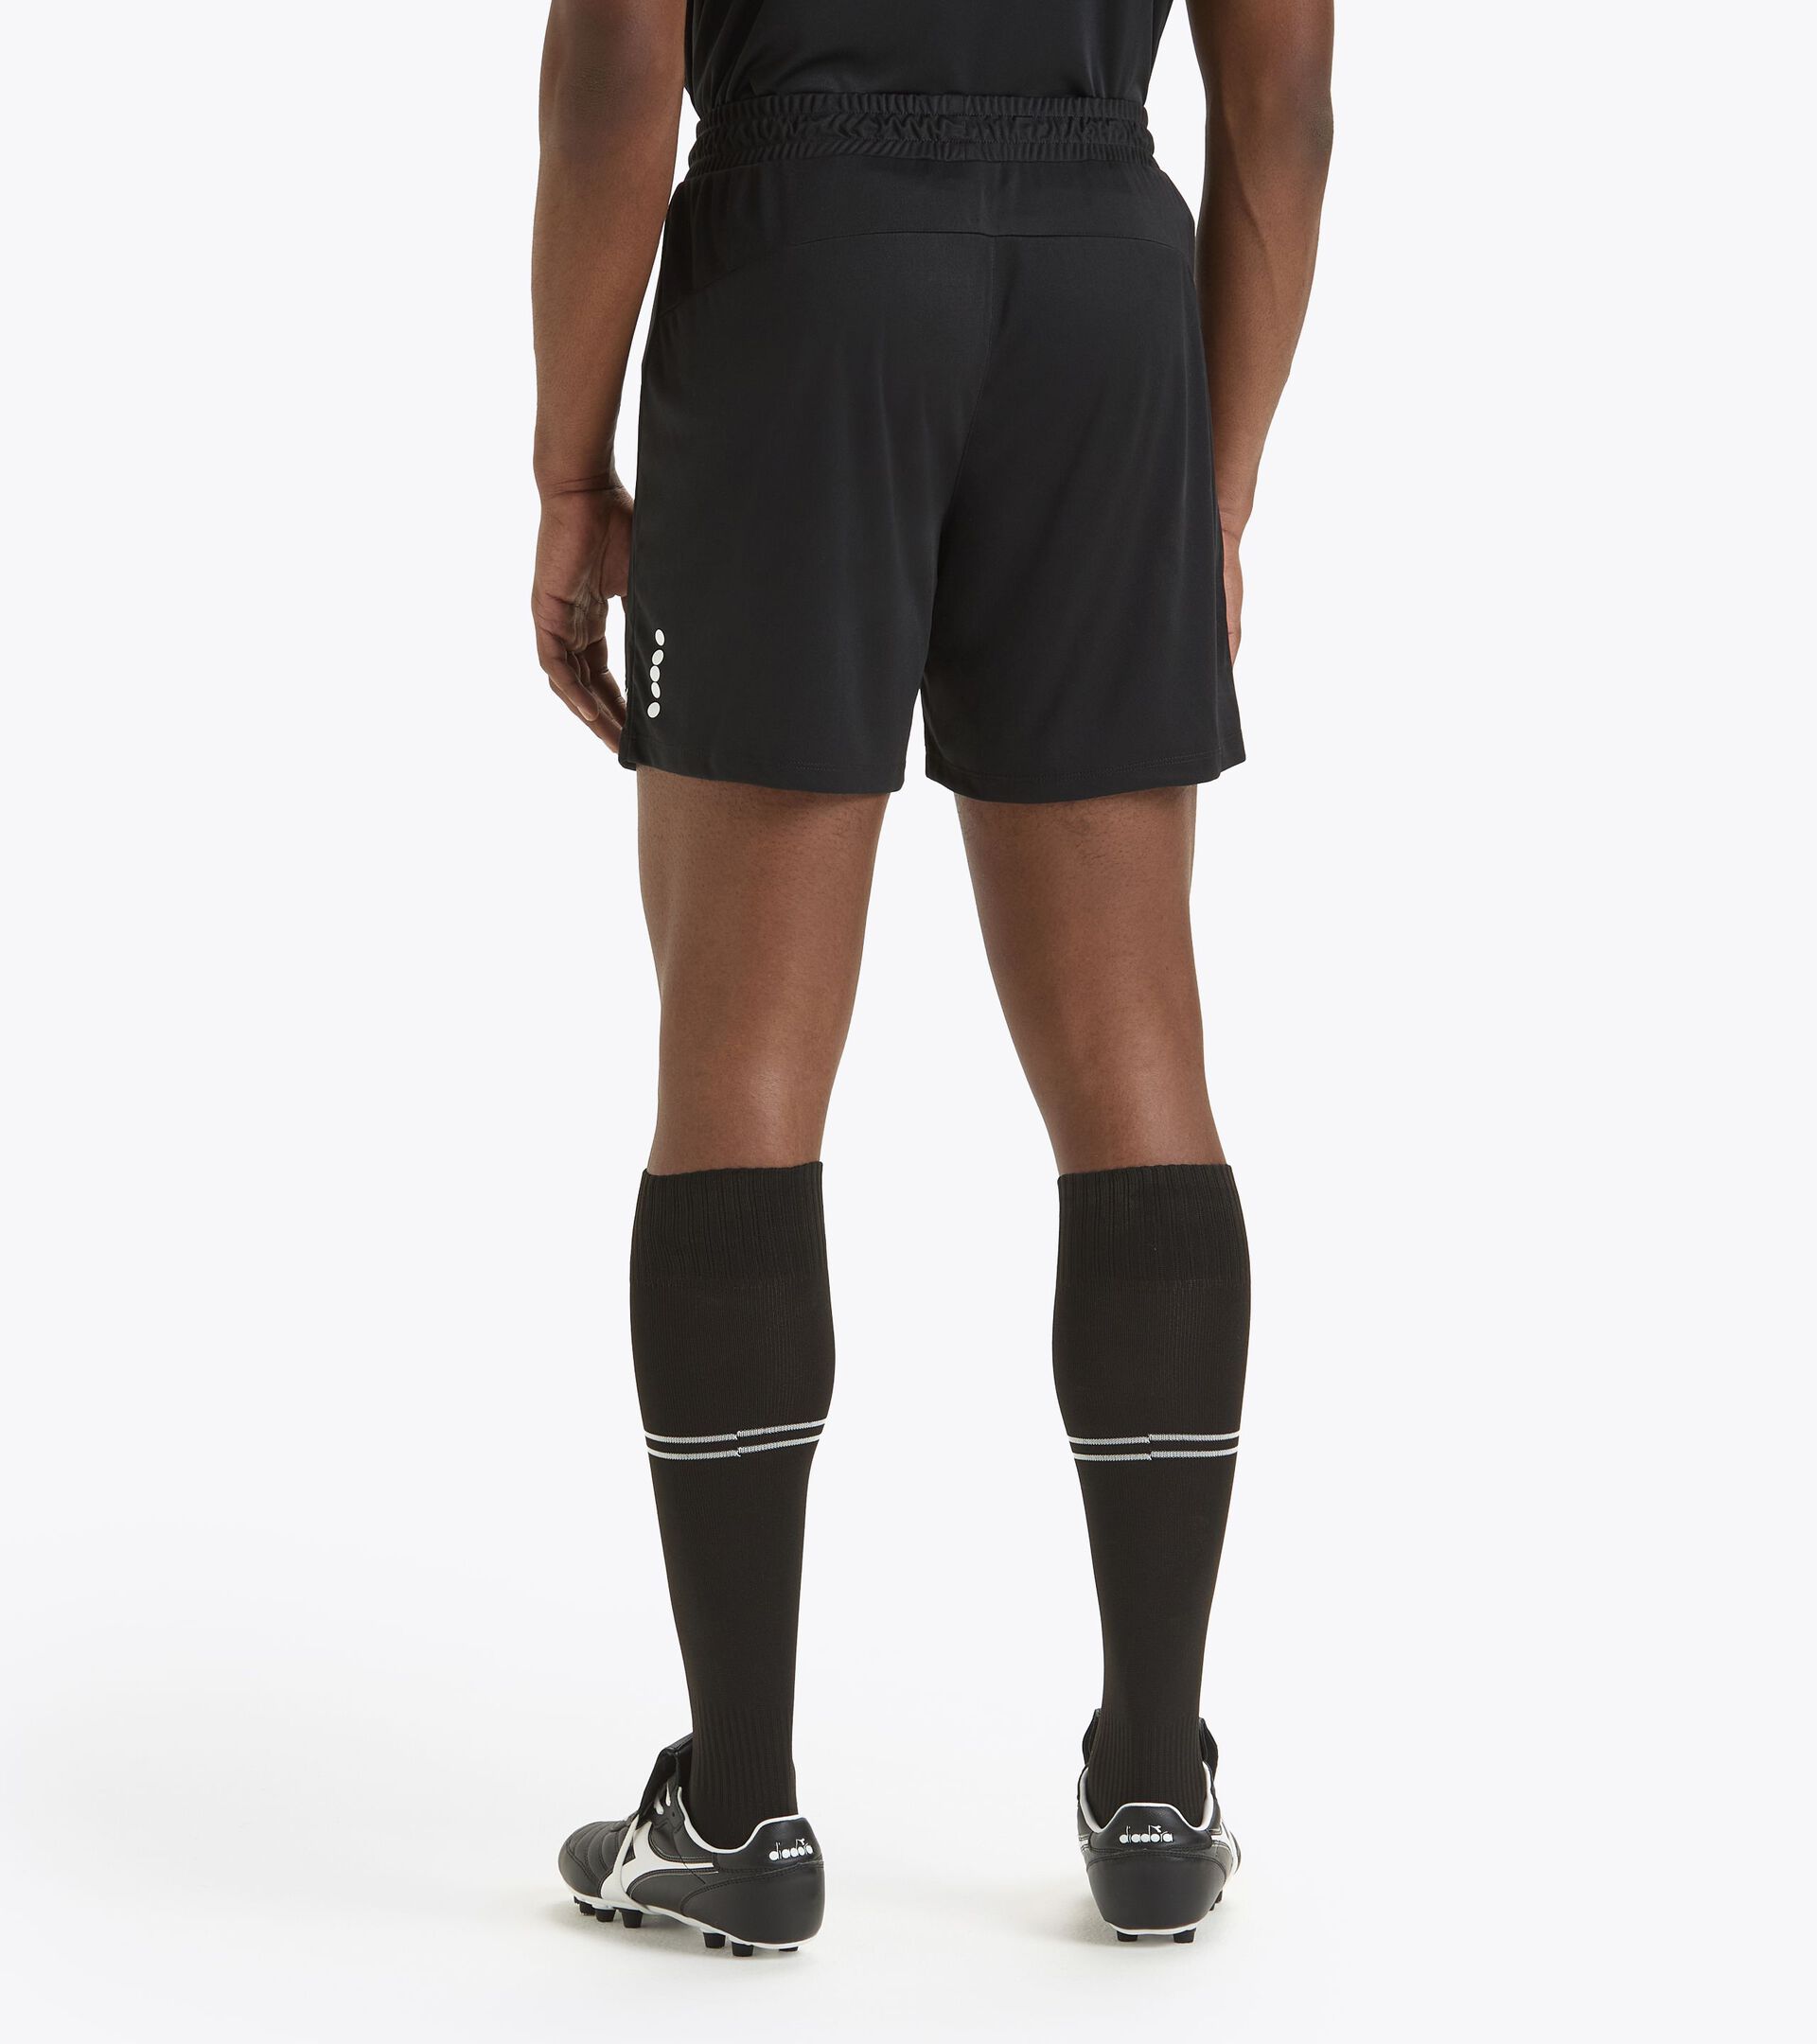 Pantalones cortos de fútbol - Hombre
 MATCH SHORT SCUDETTO NEGRO - Diadora